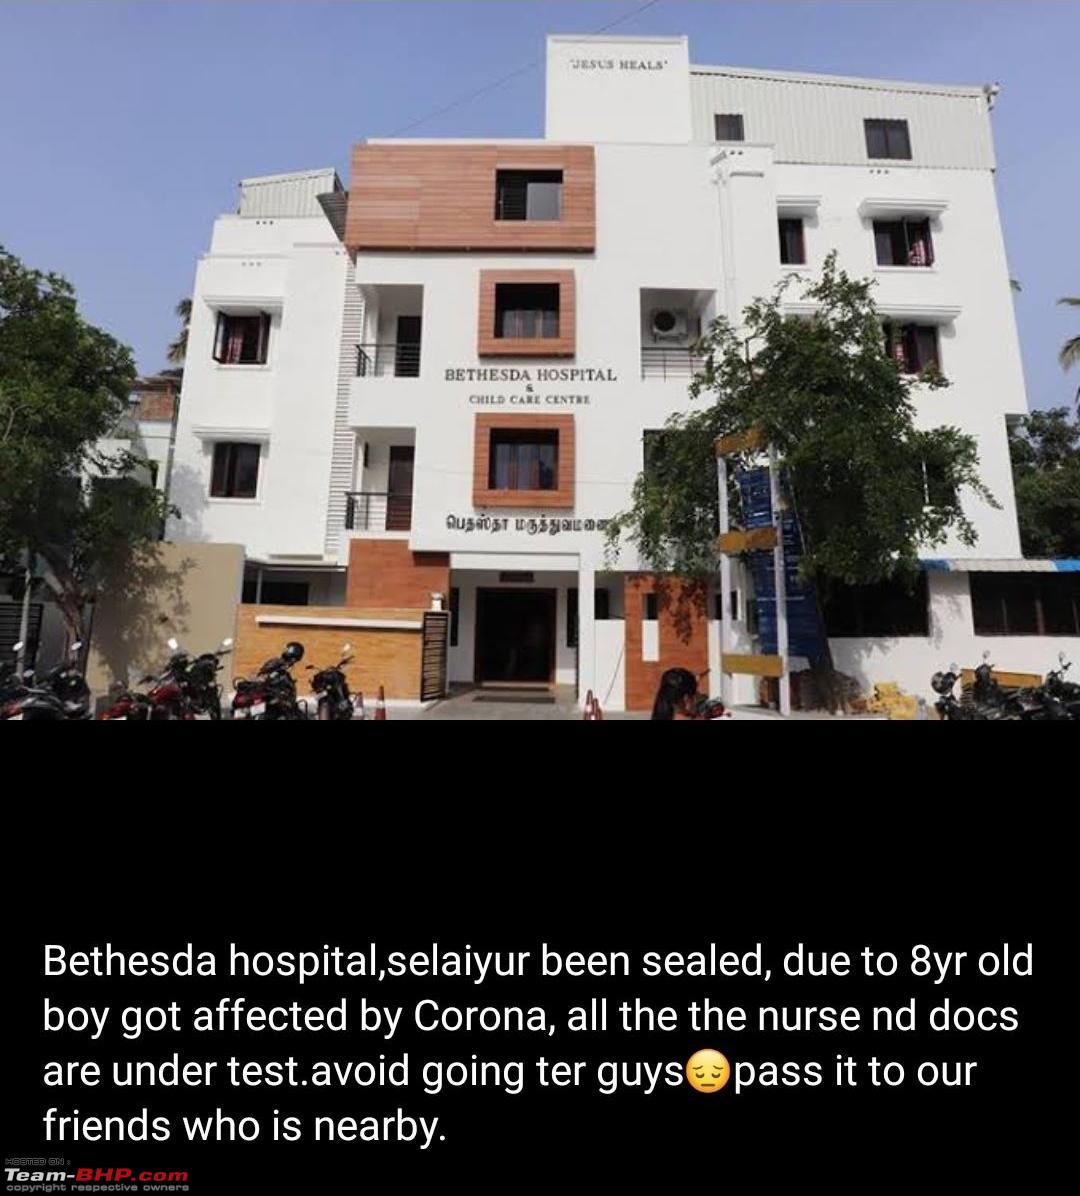 Bethesda Hospital and Child Care Centre